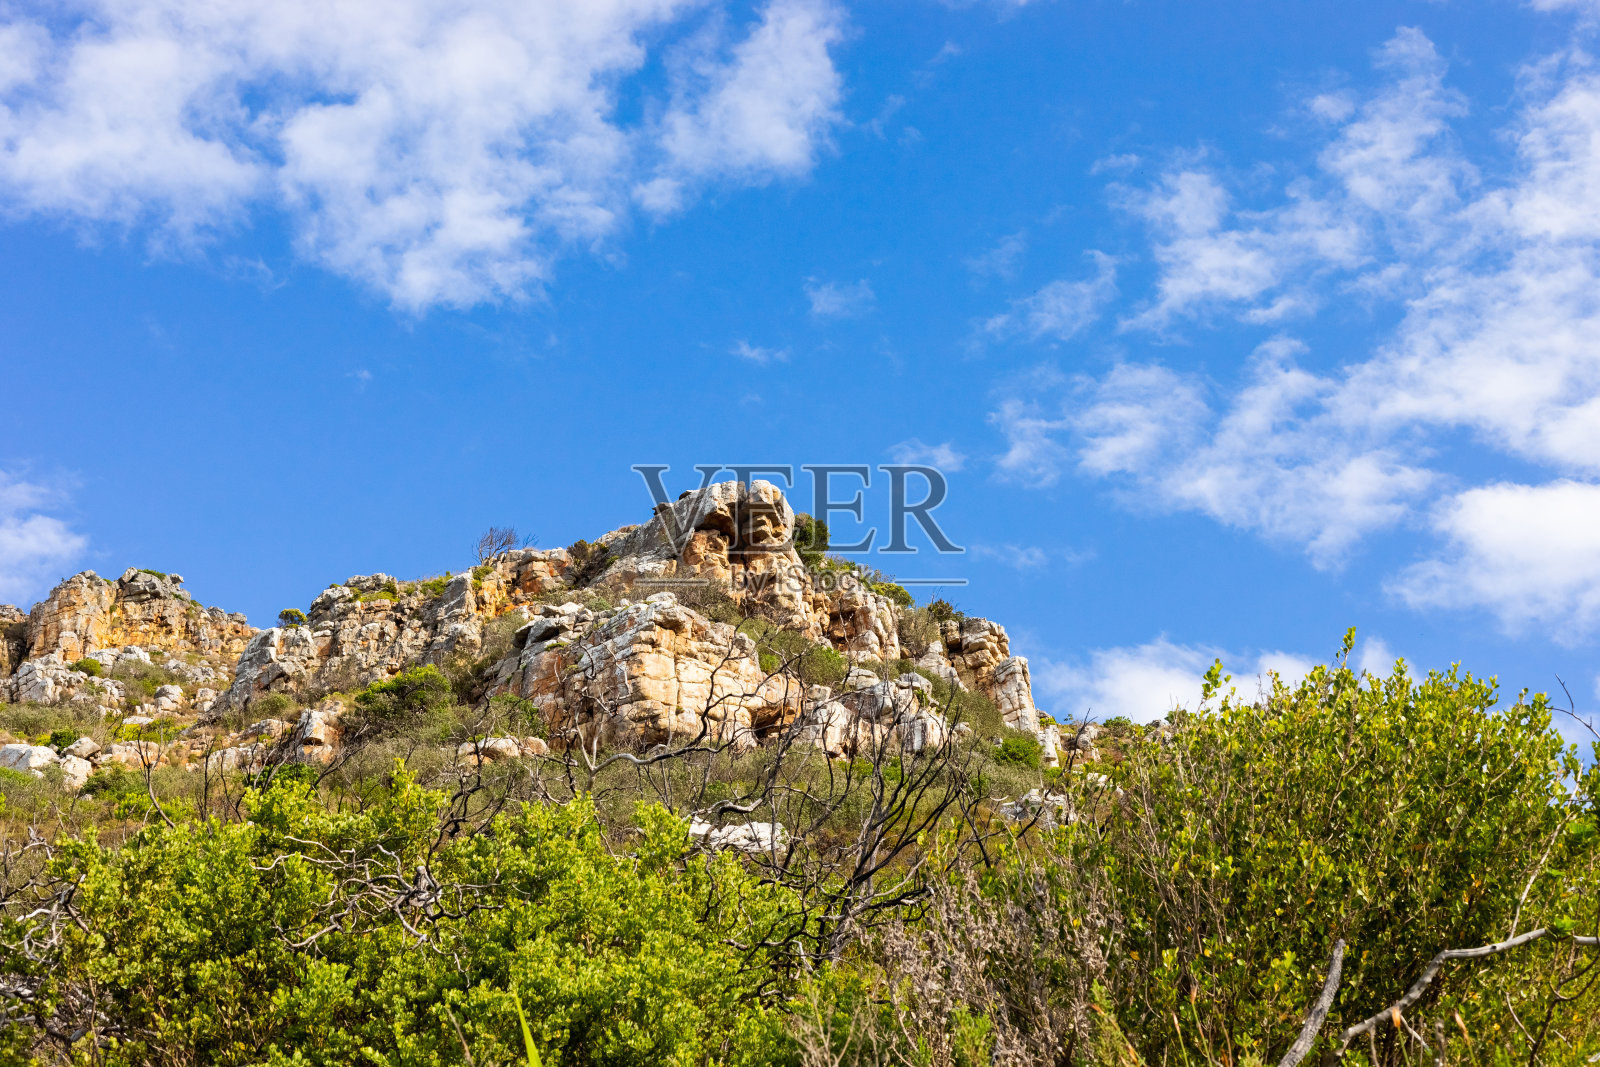 开普敦崎岖的山地景观与fynbos灌木植物群照片摄影图片